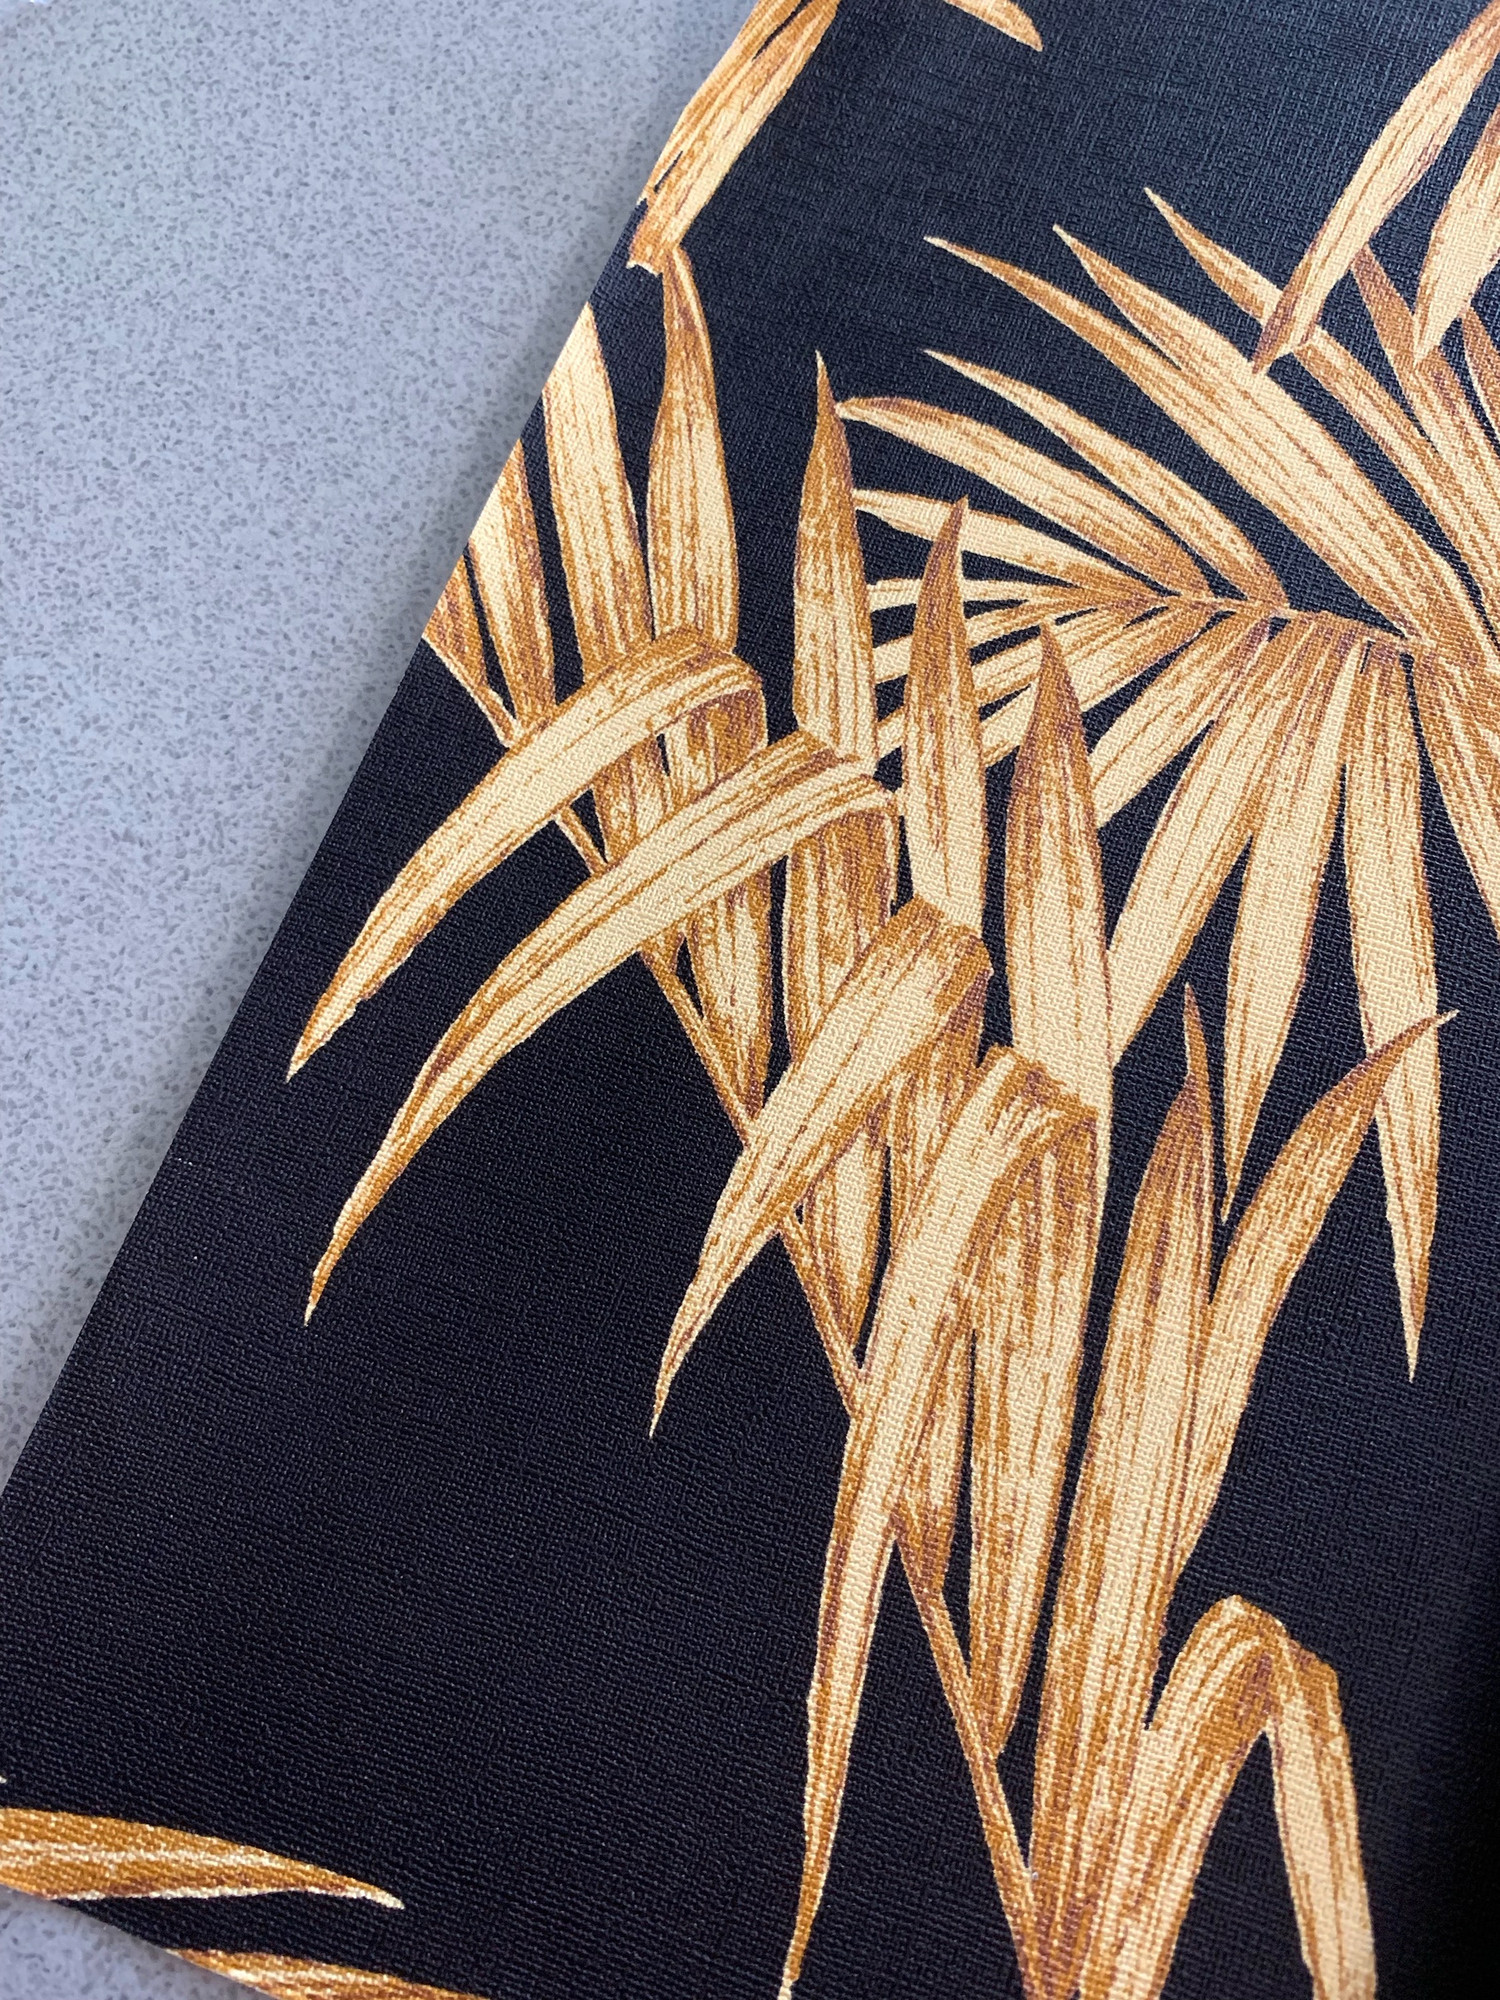 Stripe Fern Tree Wallpaper Black Gold | Metropolitan Stories Palm